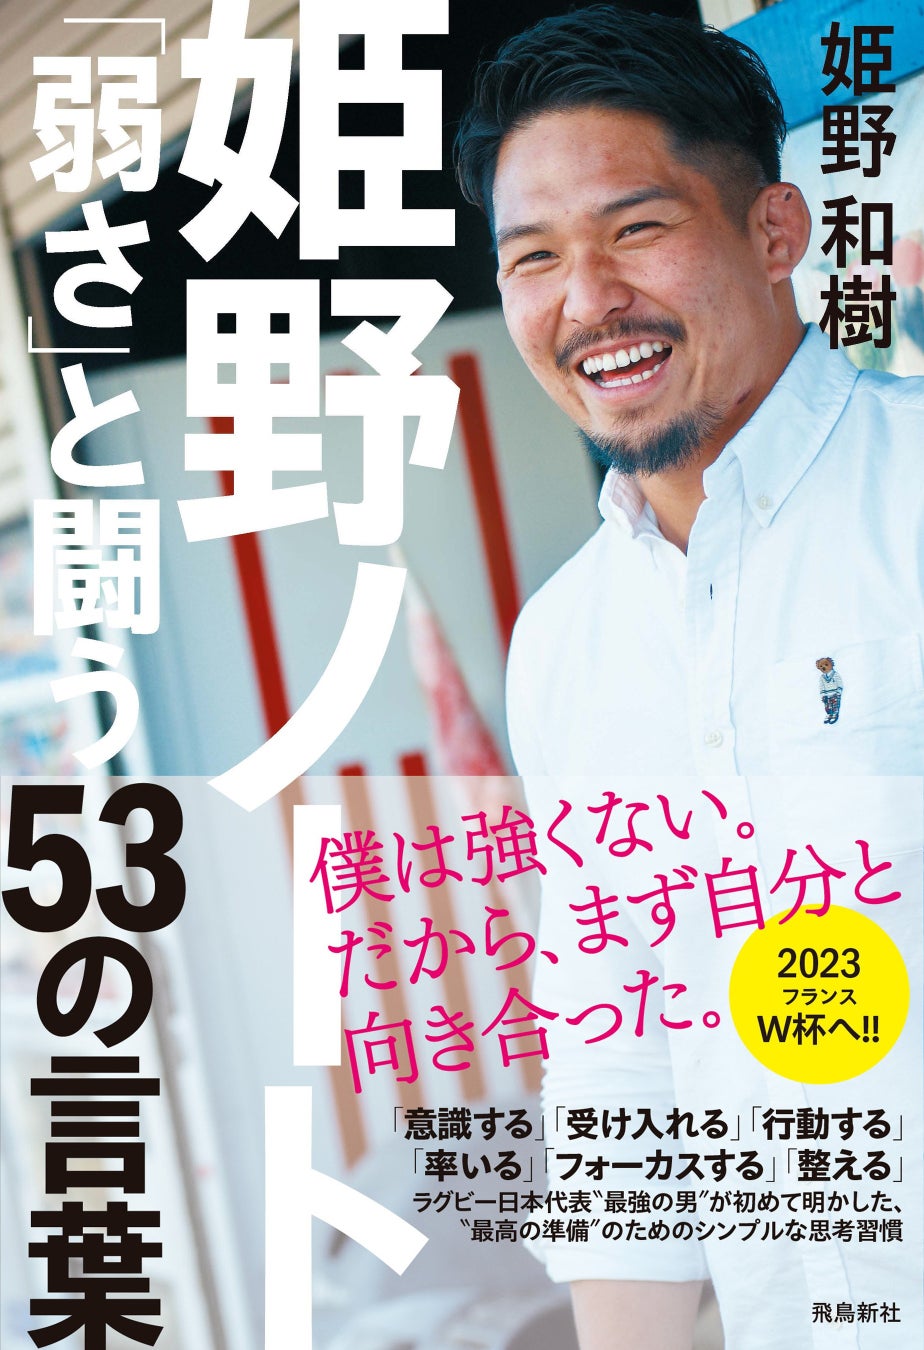 ラグビー日本代表〝最強の男〟姫野和樹、初の著書!!　〝最高の準備〟のための「シンプルな思考習慣」「セルフコーチング・メソッド」を初公開!!